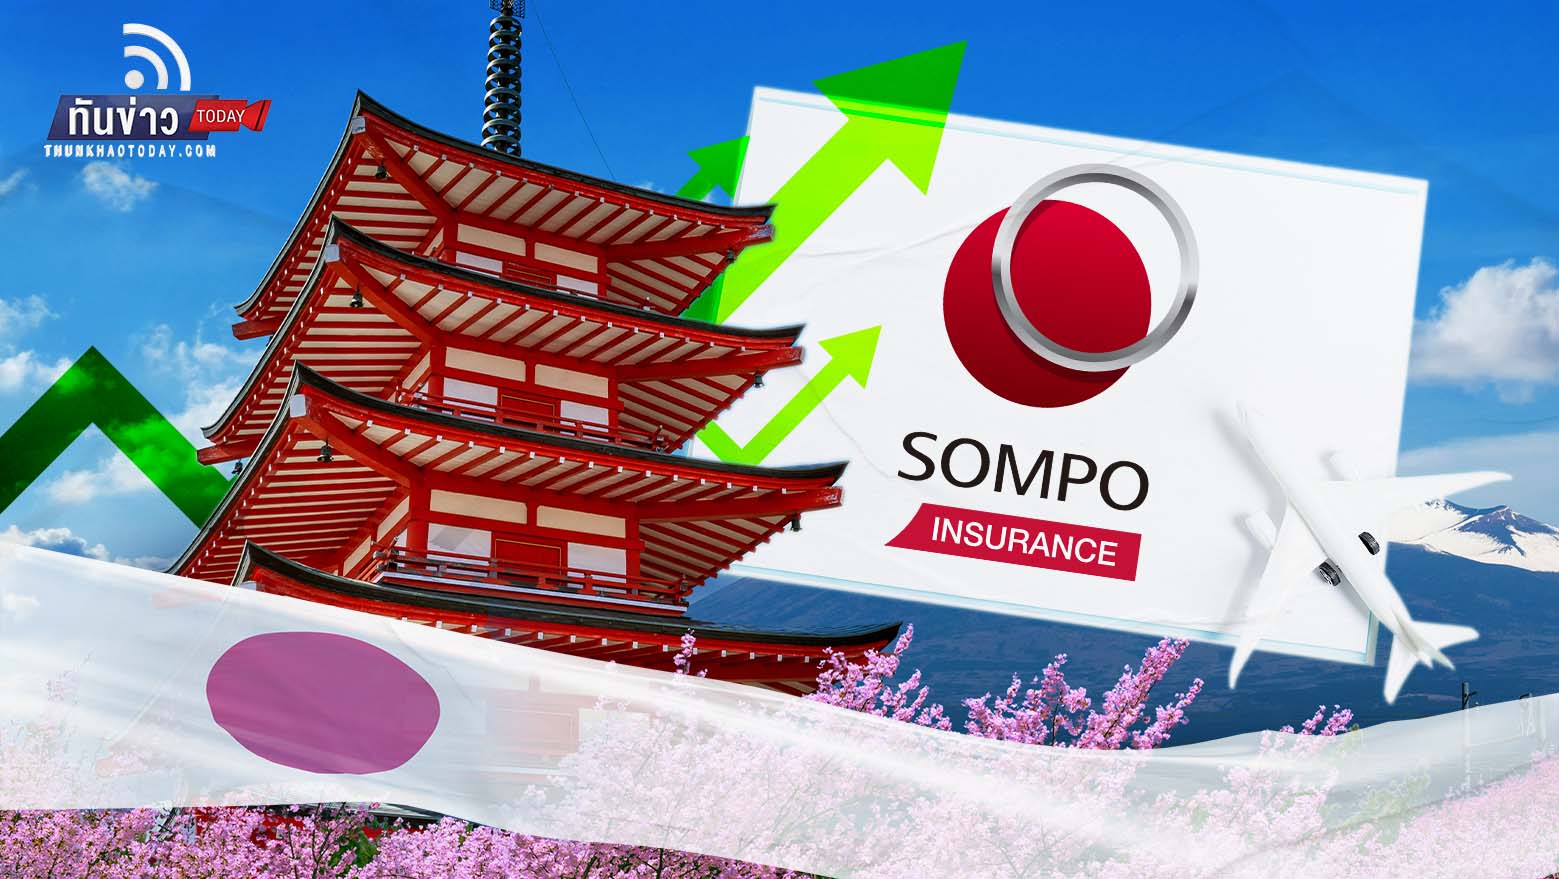 ไทยยืนหนึ่ง “เที่ยวญี่ปุ่น” ดันประกันเดินทาง ซมโปะ โต 60%